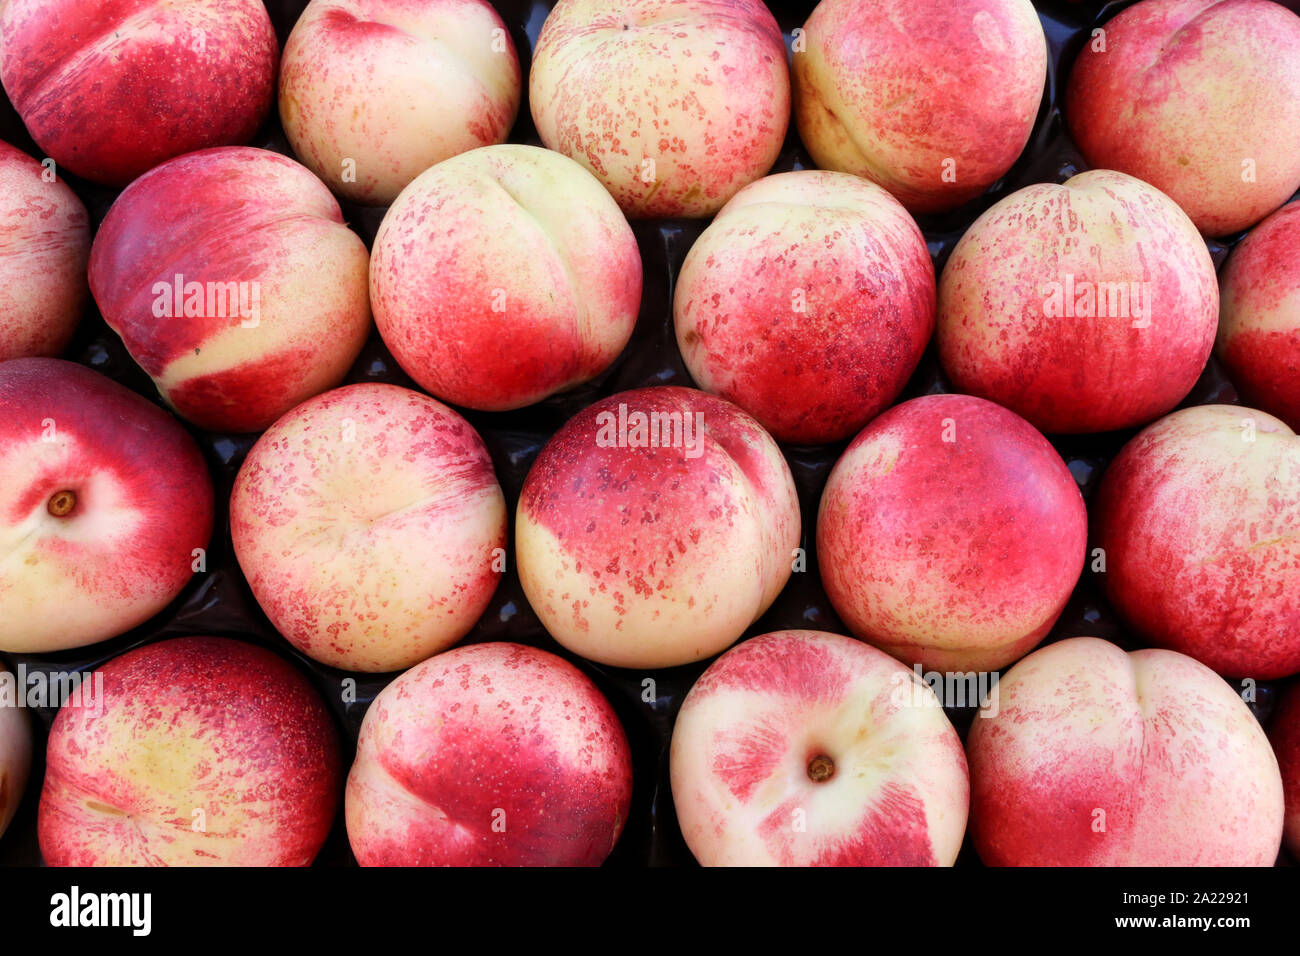 Nectarines. Peaches. Stock Photo